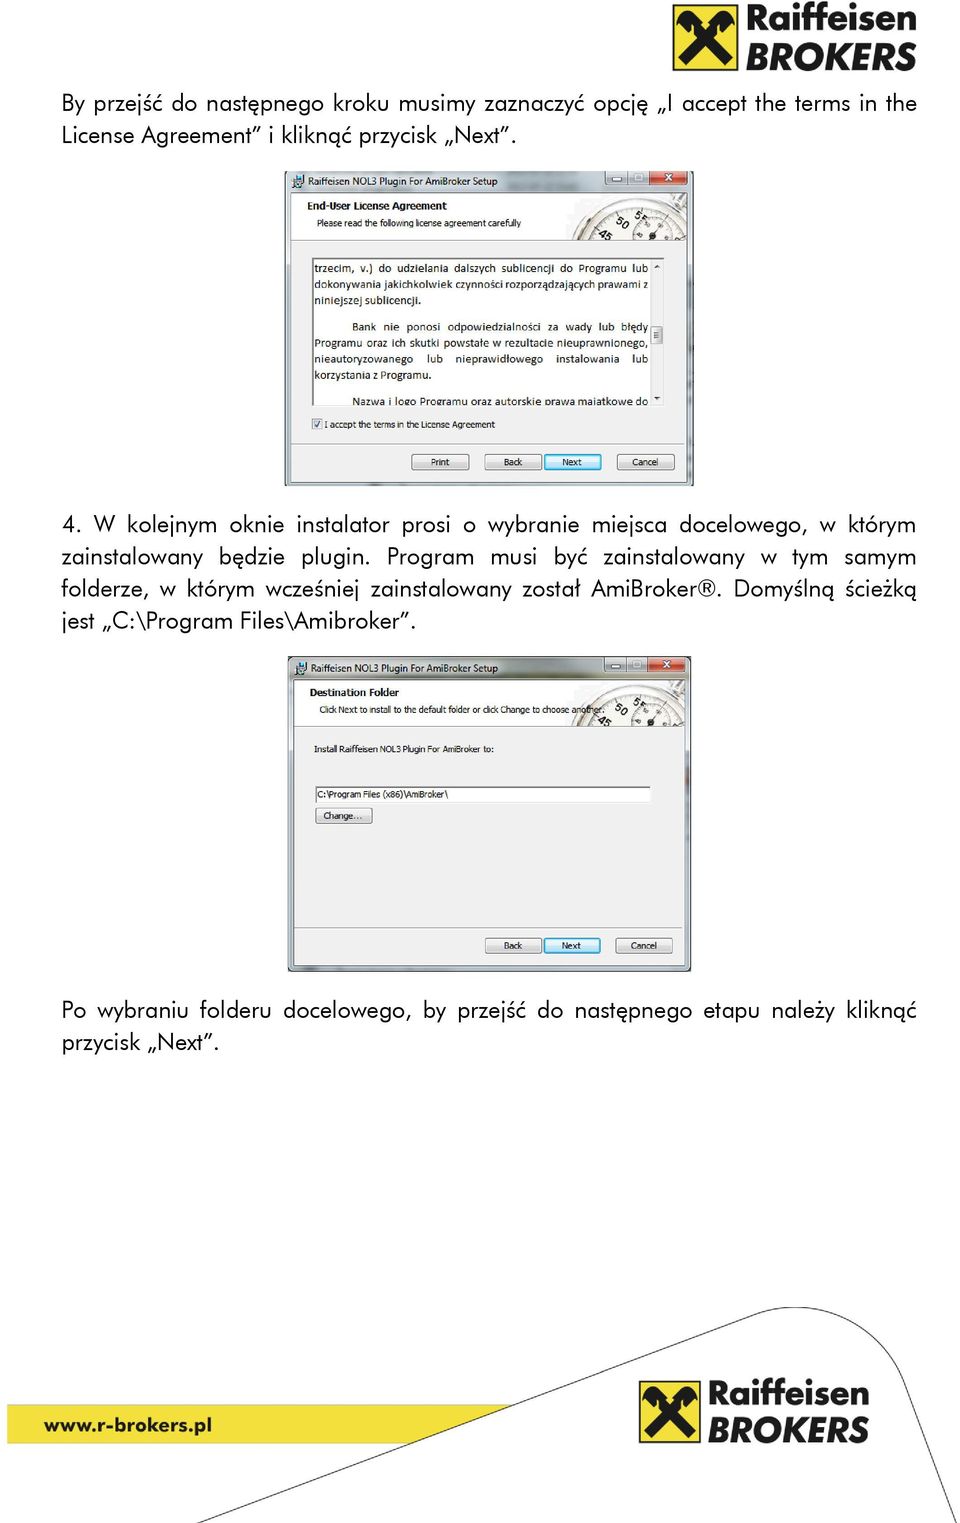 Program musi być zainstalowany w tym samym folderze, w którym wcześniej zainstalowany został AmiBroker.